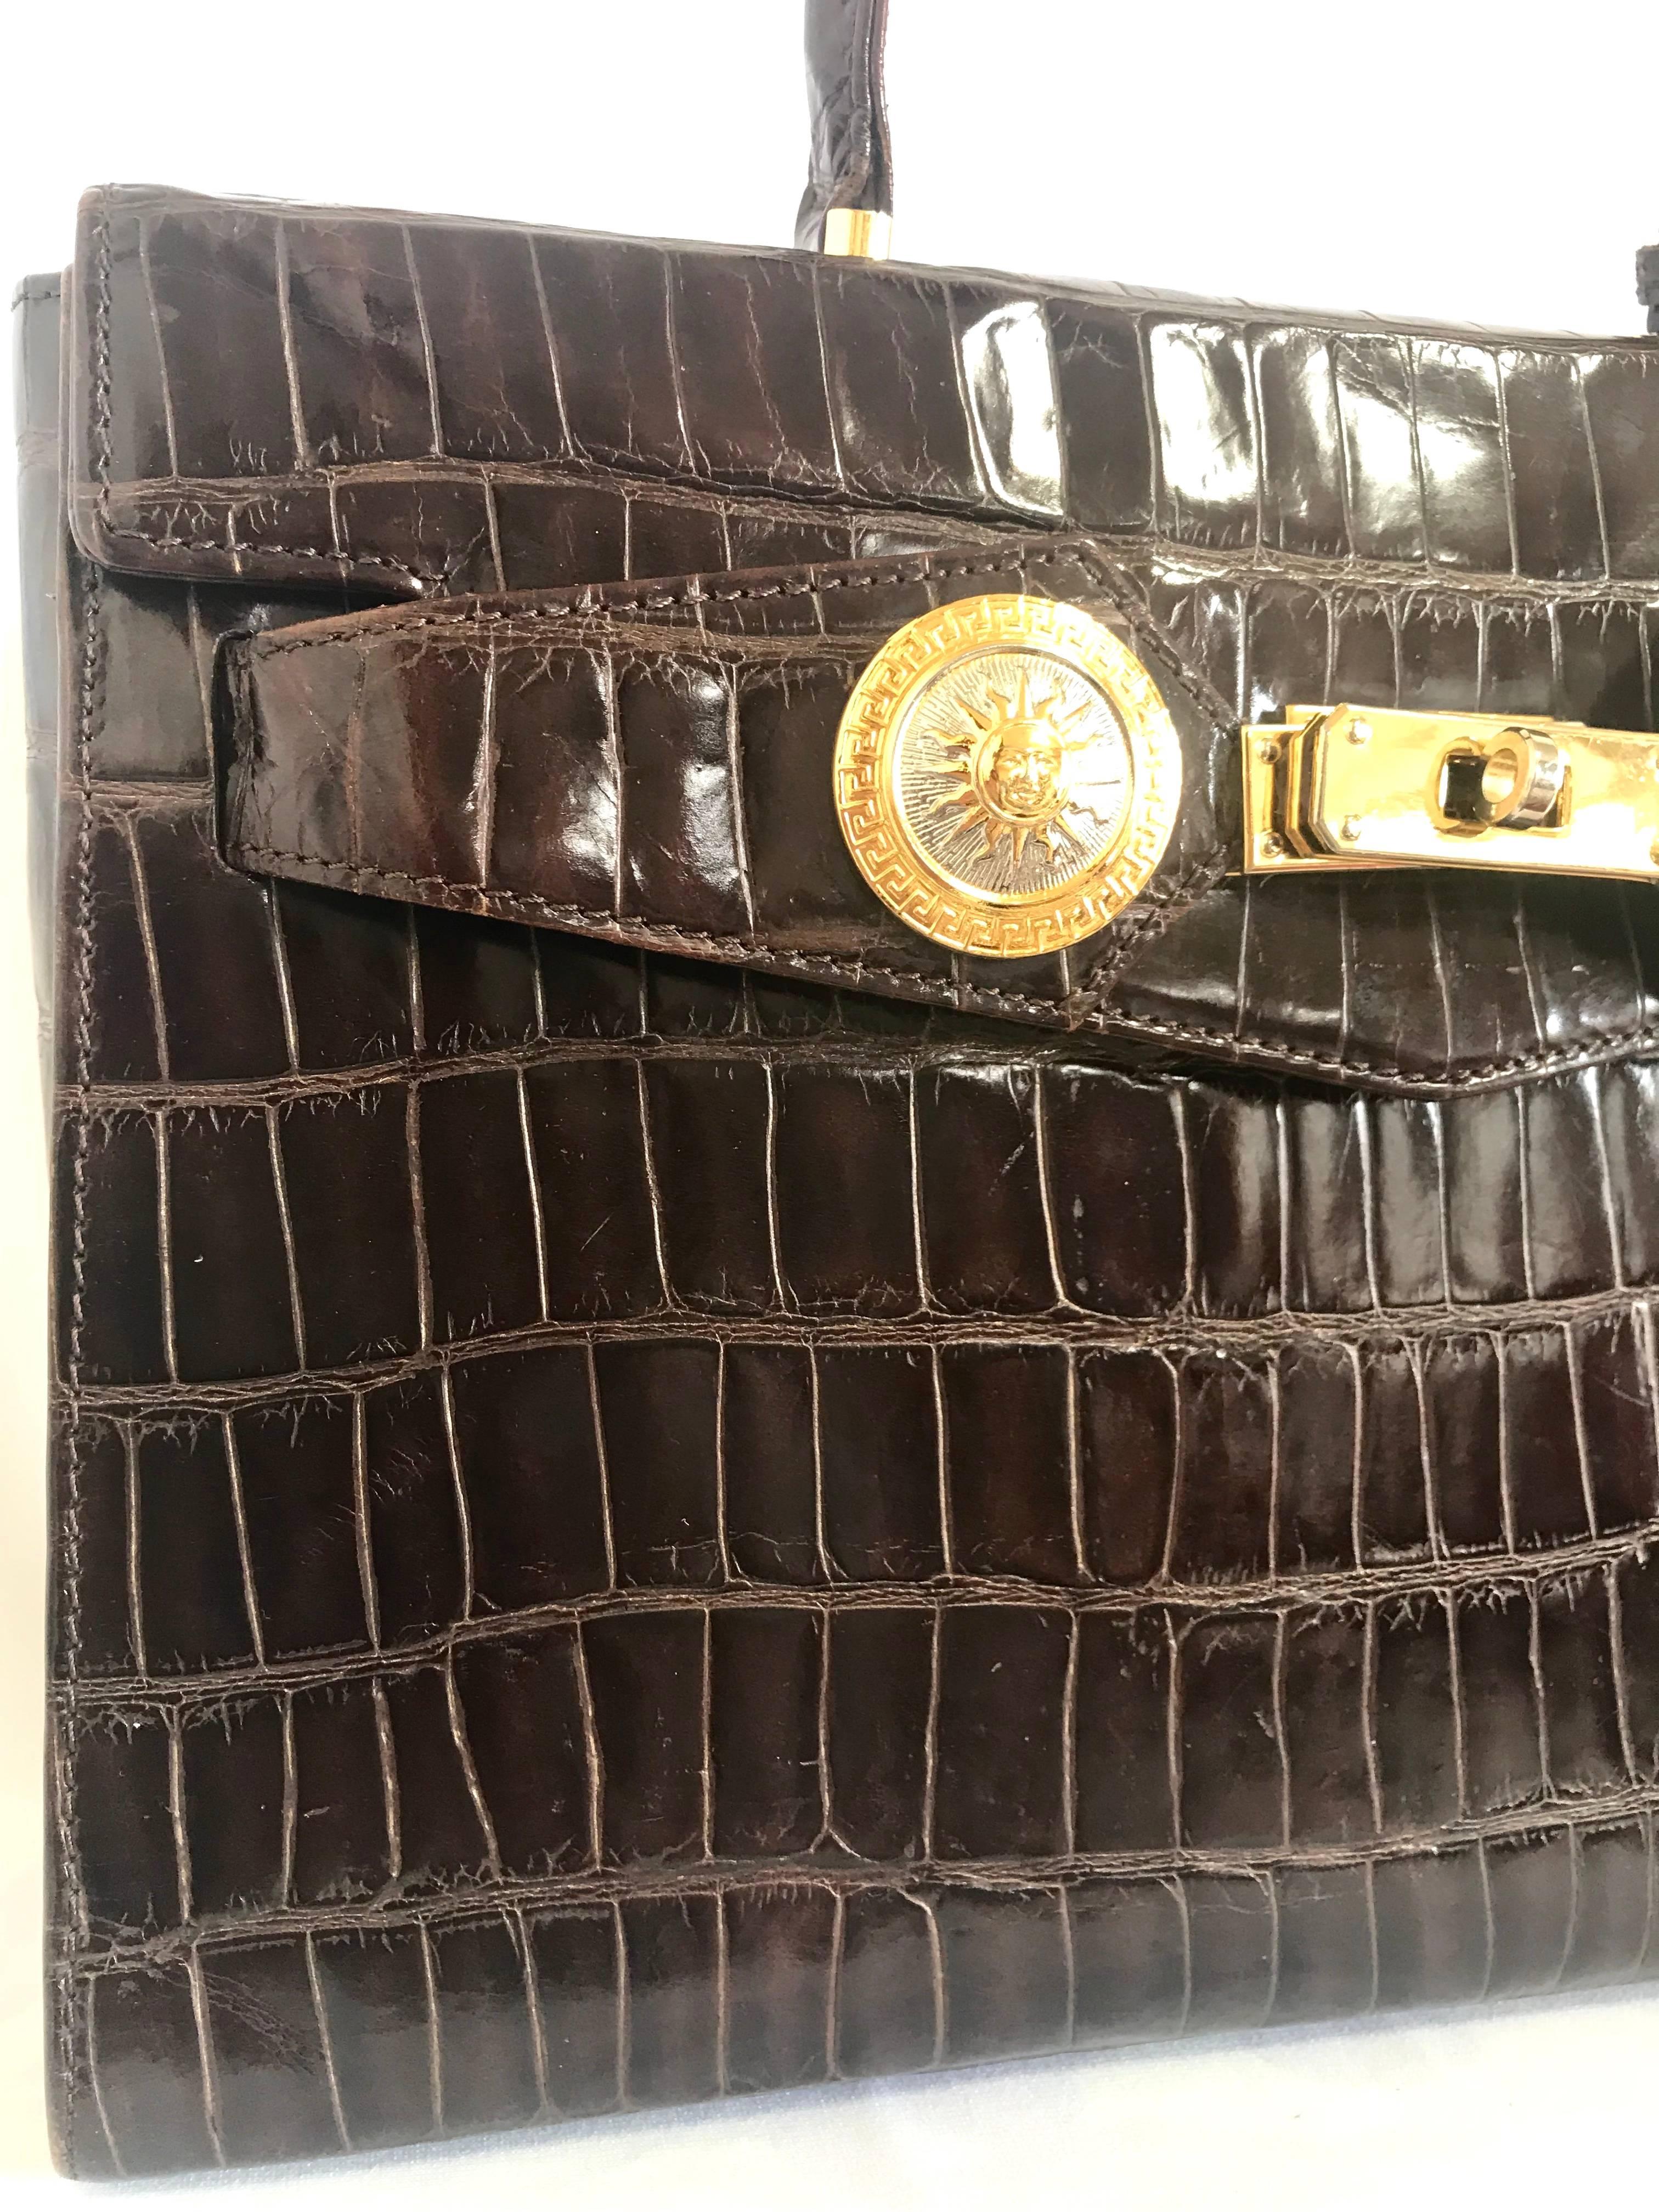 Vintage Gianni Versace dark brown croc embossed leather Kelly style bag. 1